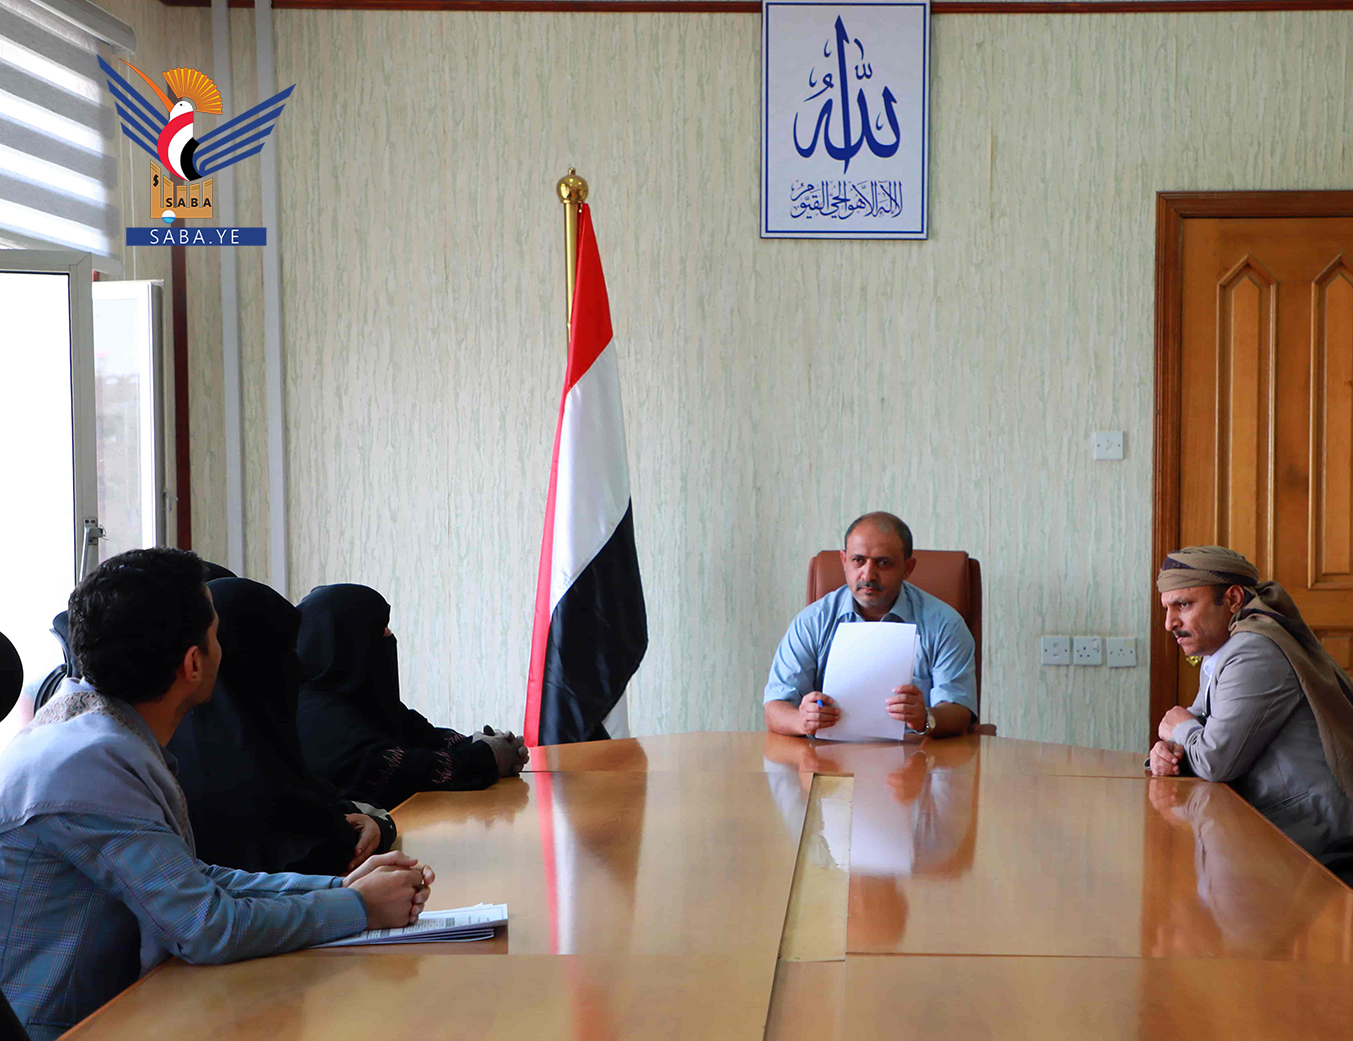  Al-Hamli rencontre la présidente de l'Association yéménite des sages-femmes